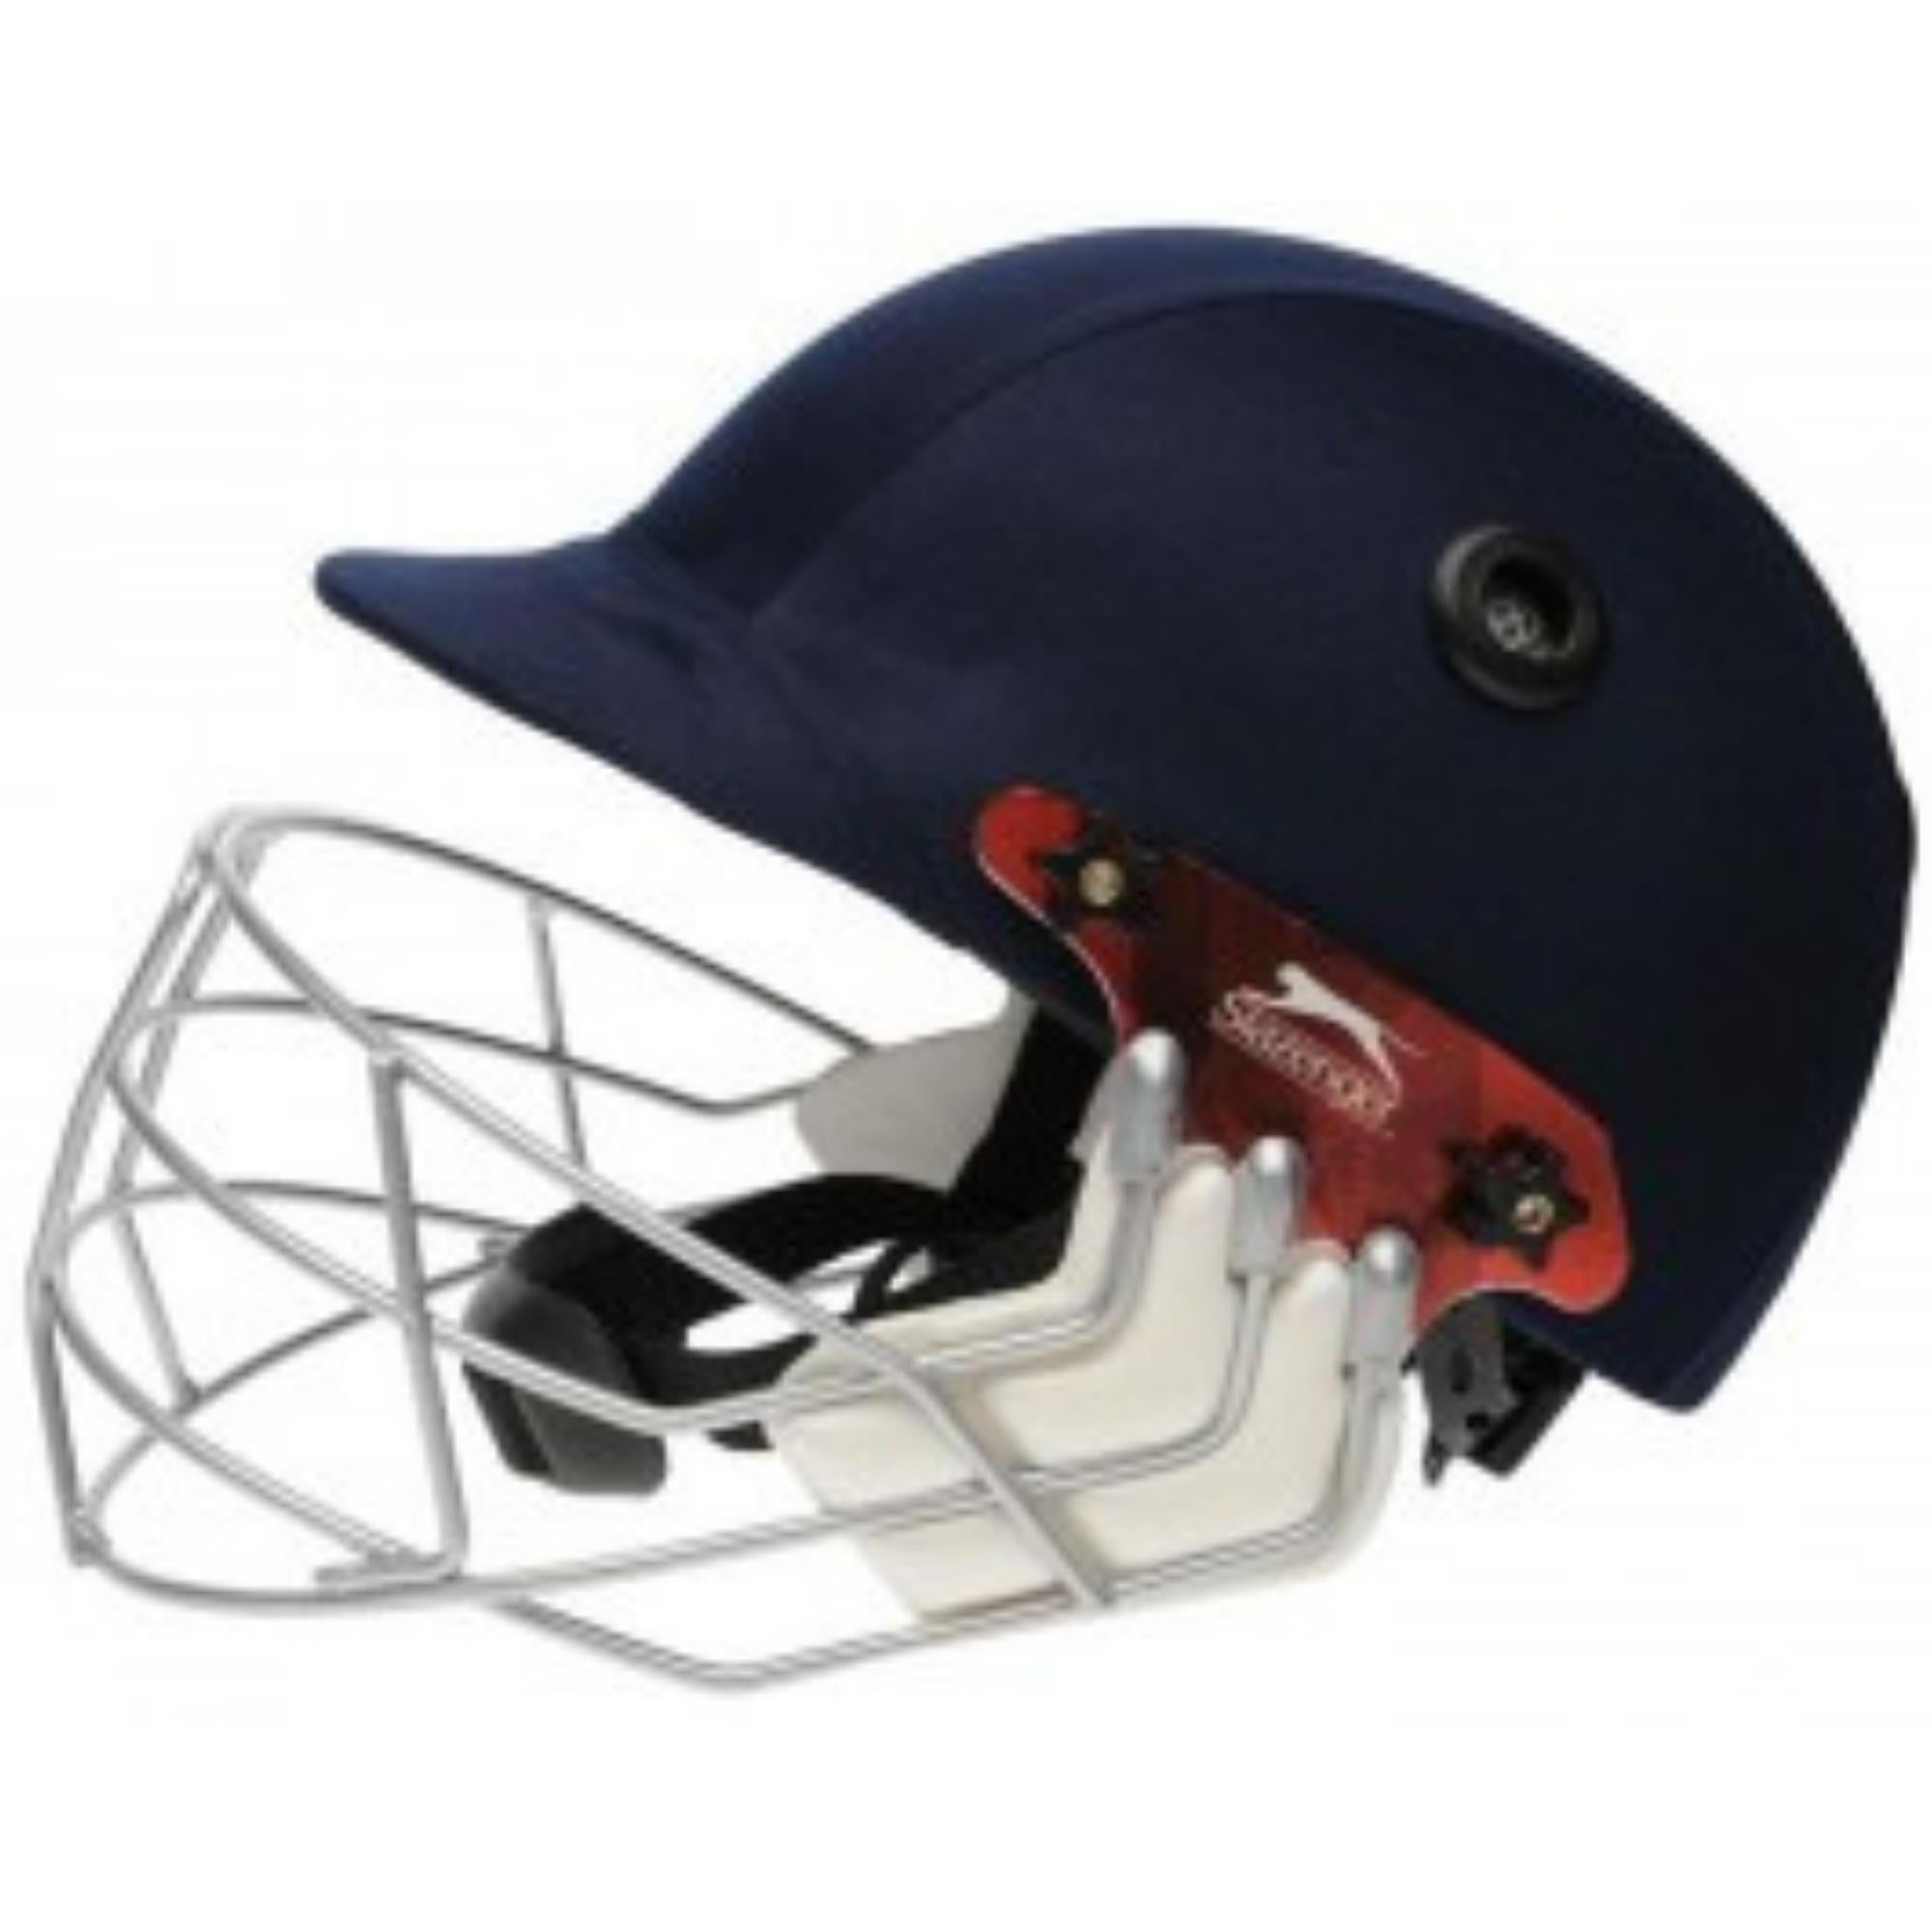 Slazenger Cricket Helmet